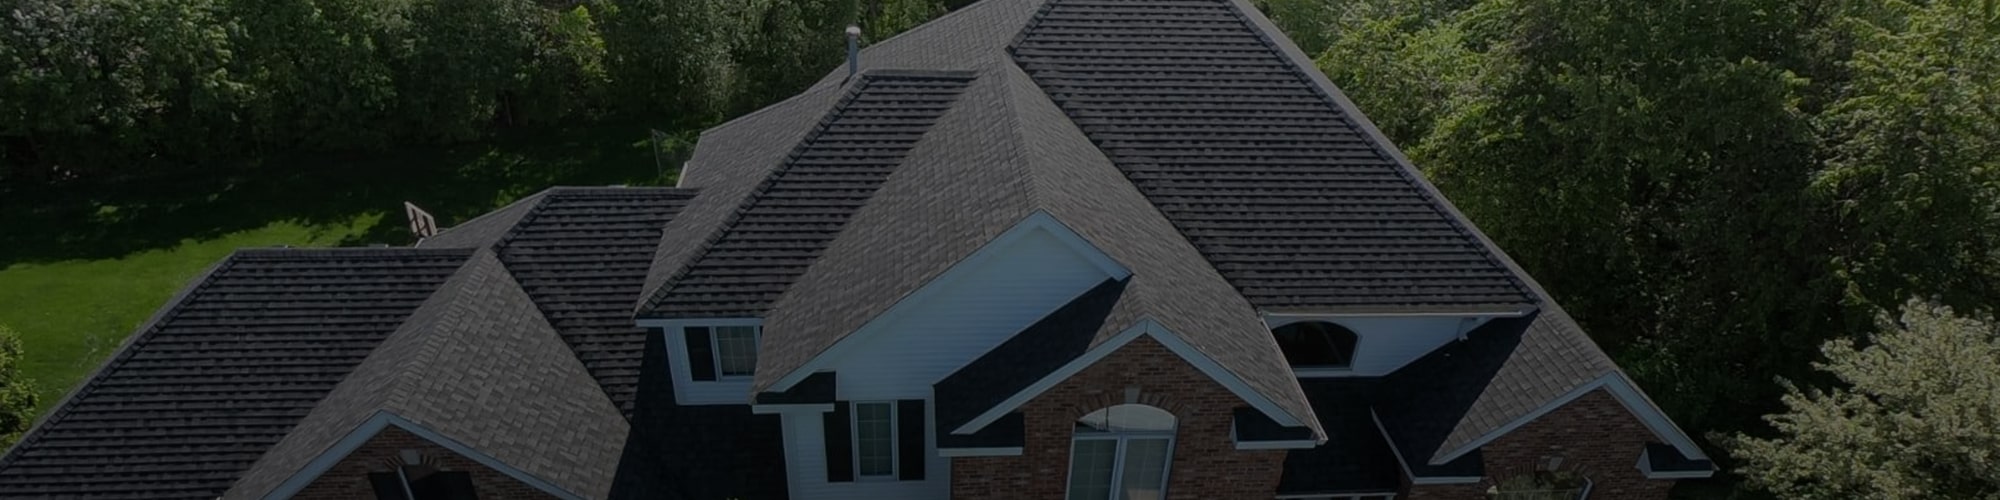 Best Roofing Contractor in Grand Rapids